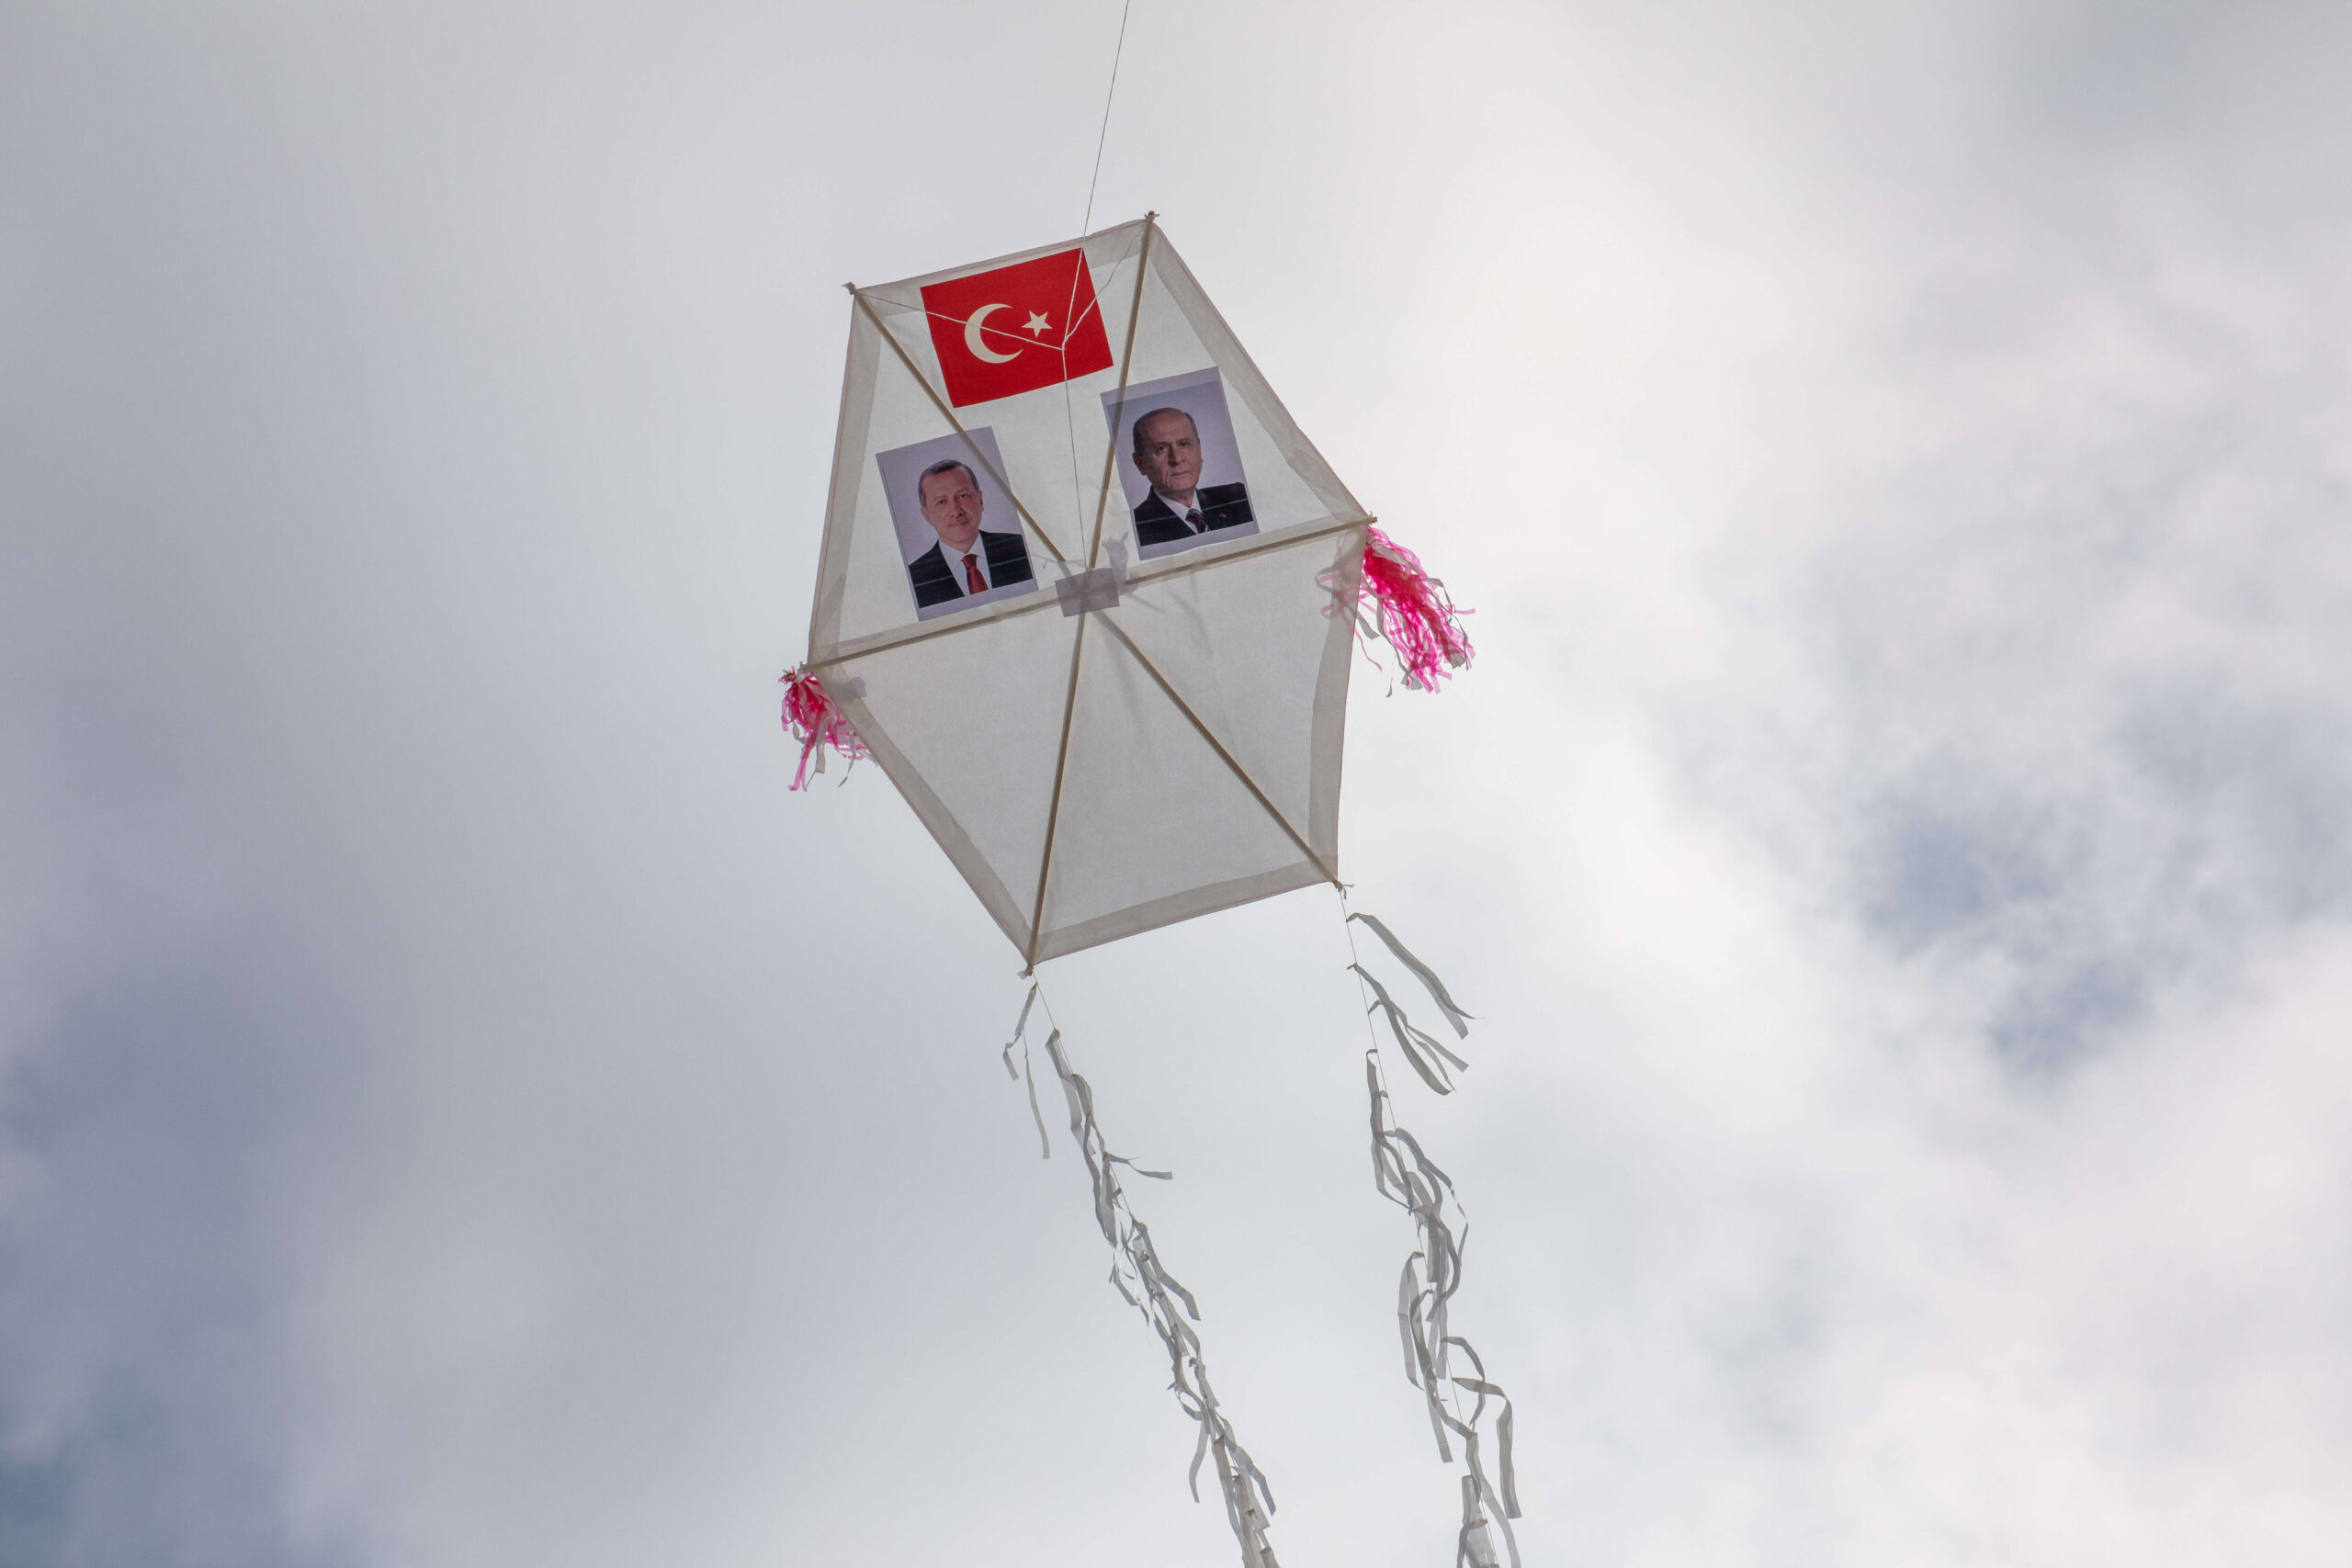 Fotos de Tayyip Erdogan y Devlet Bahceli aparecen en una cometa lanzada en el mitin. El Presidente de la República de Turquía, Recep Tayyip Erdogan, celebró un mitin muy concurrido bajo el lema 